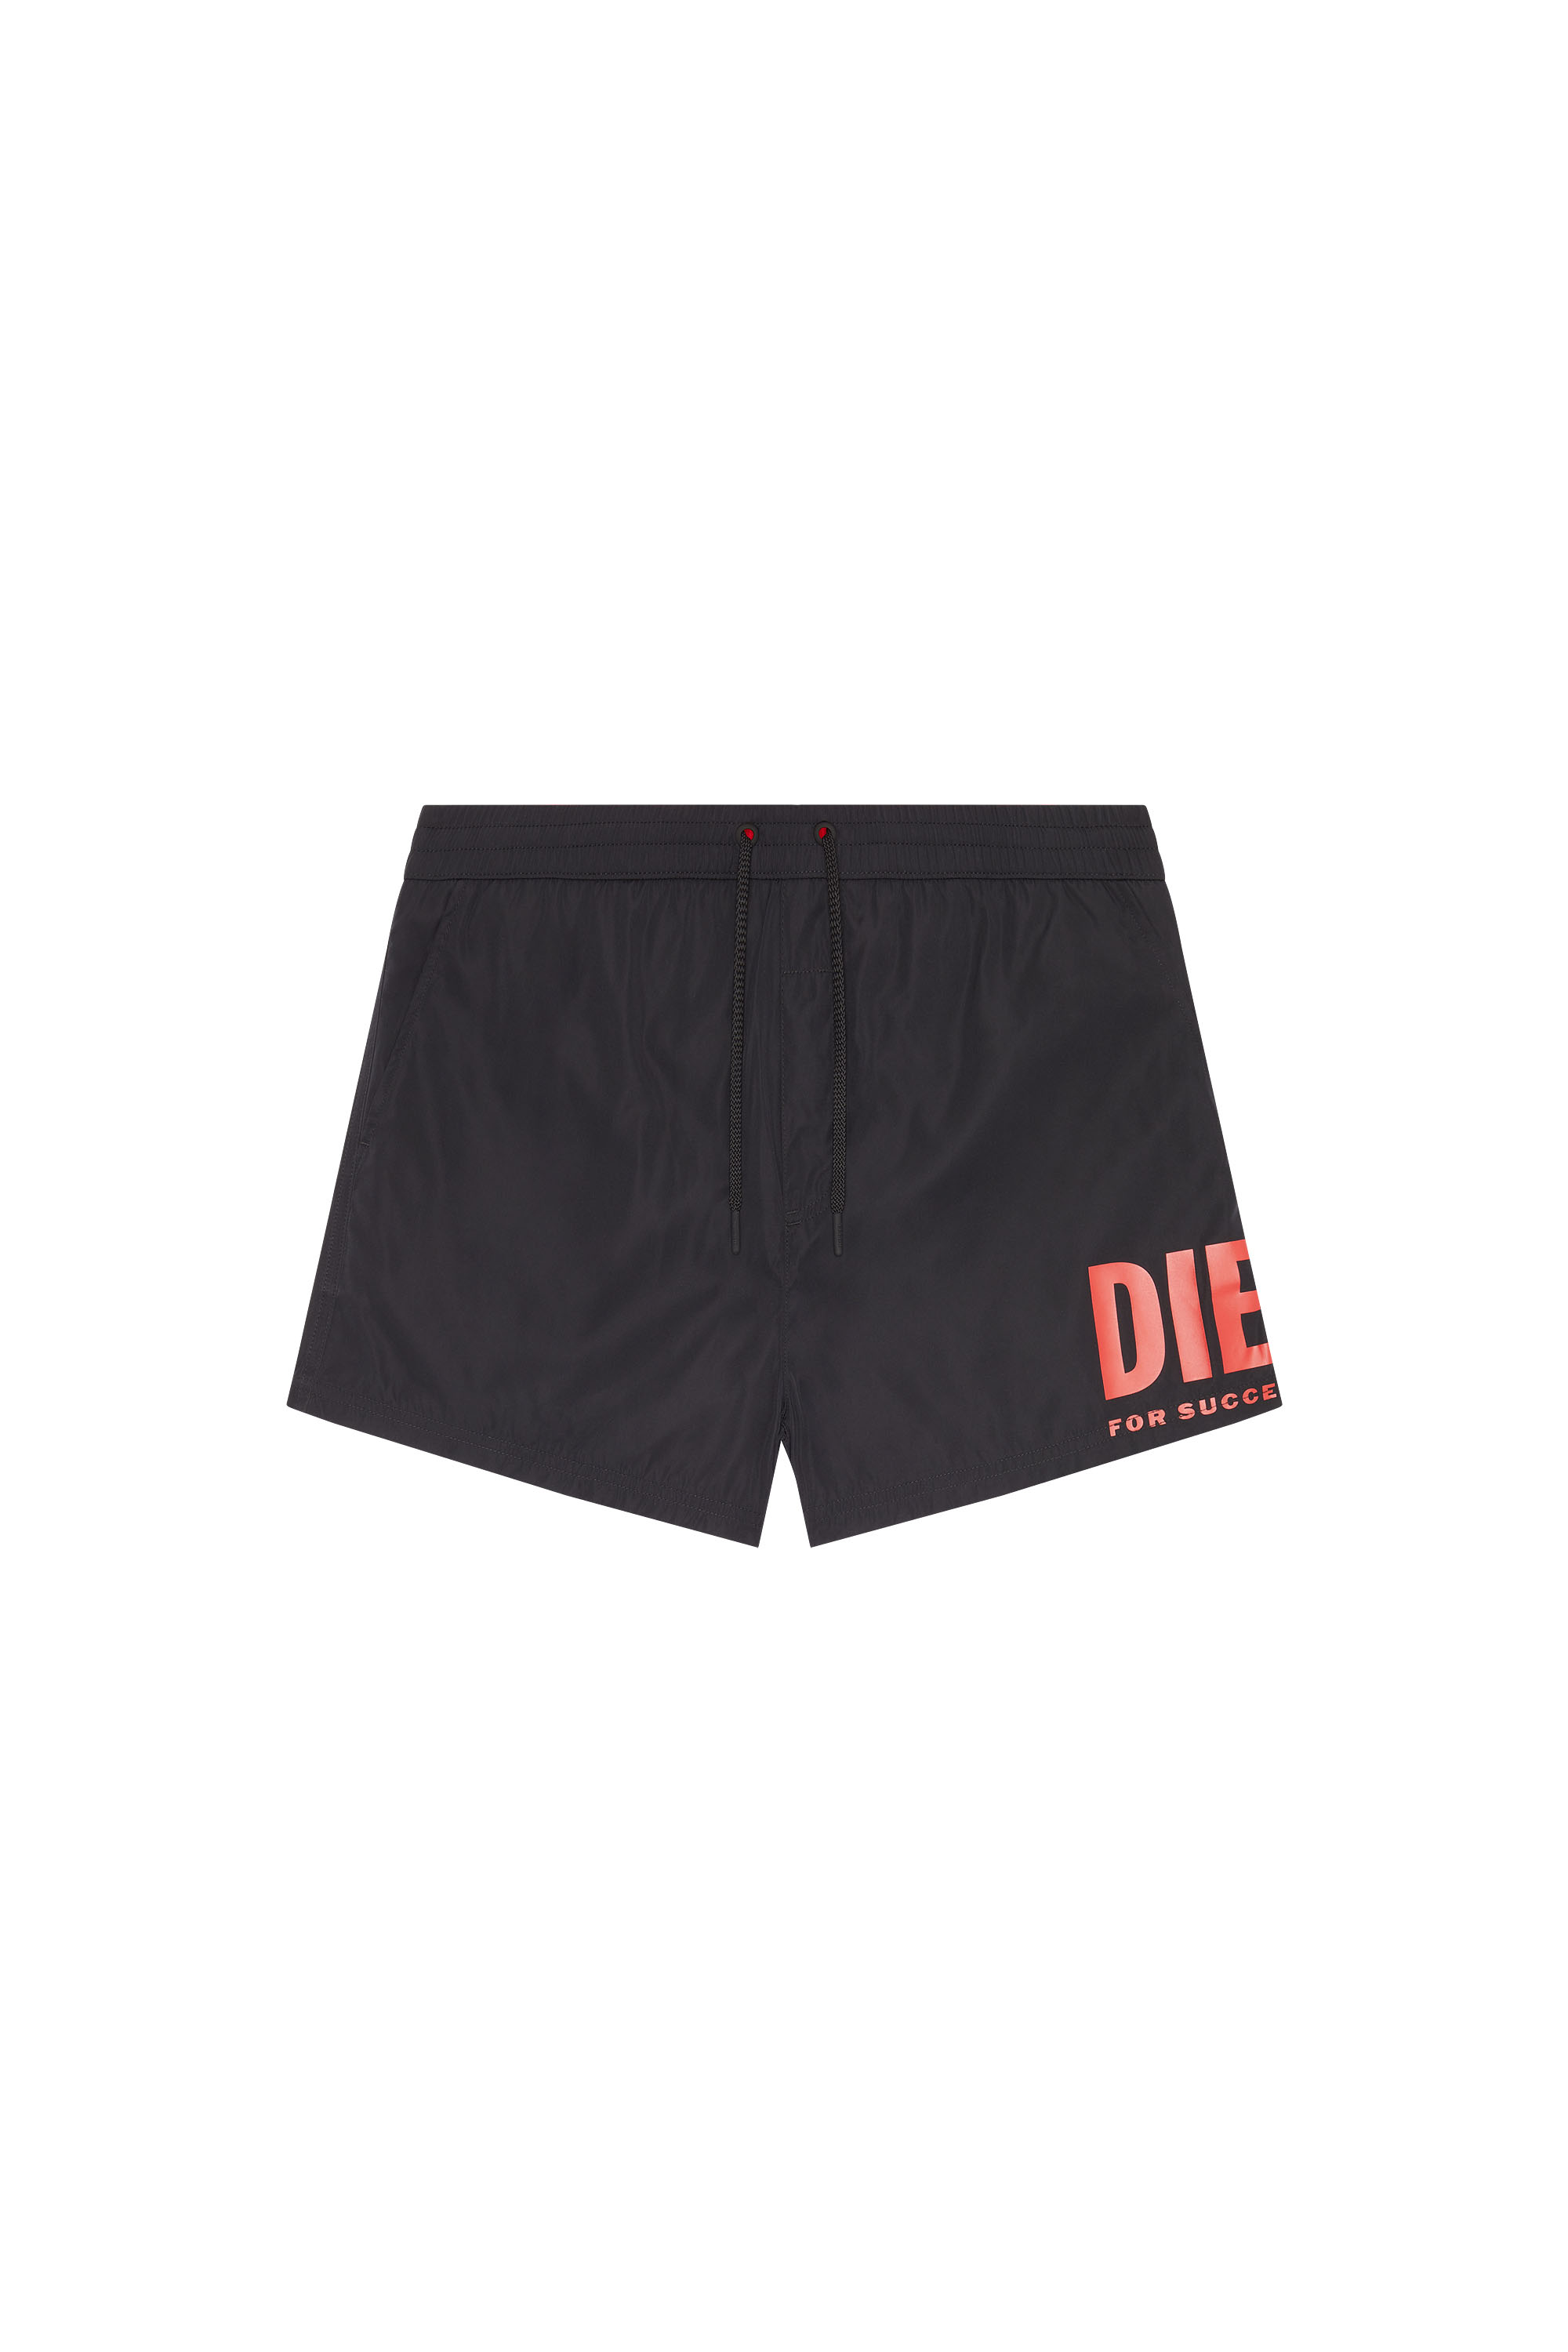 Diesel - Bade-Shorts mit großem Logo-Print - Badeshorts - Herren - Schwarz